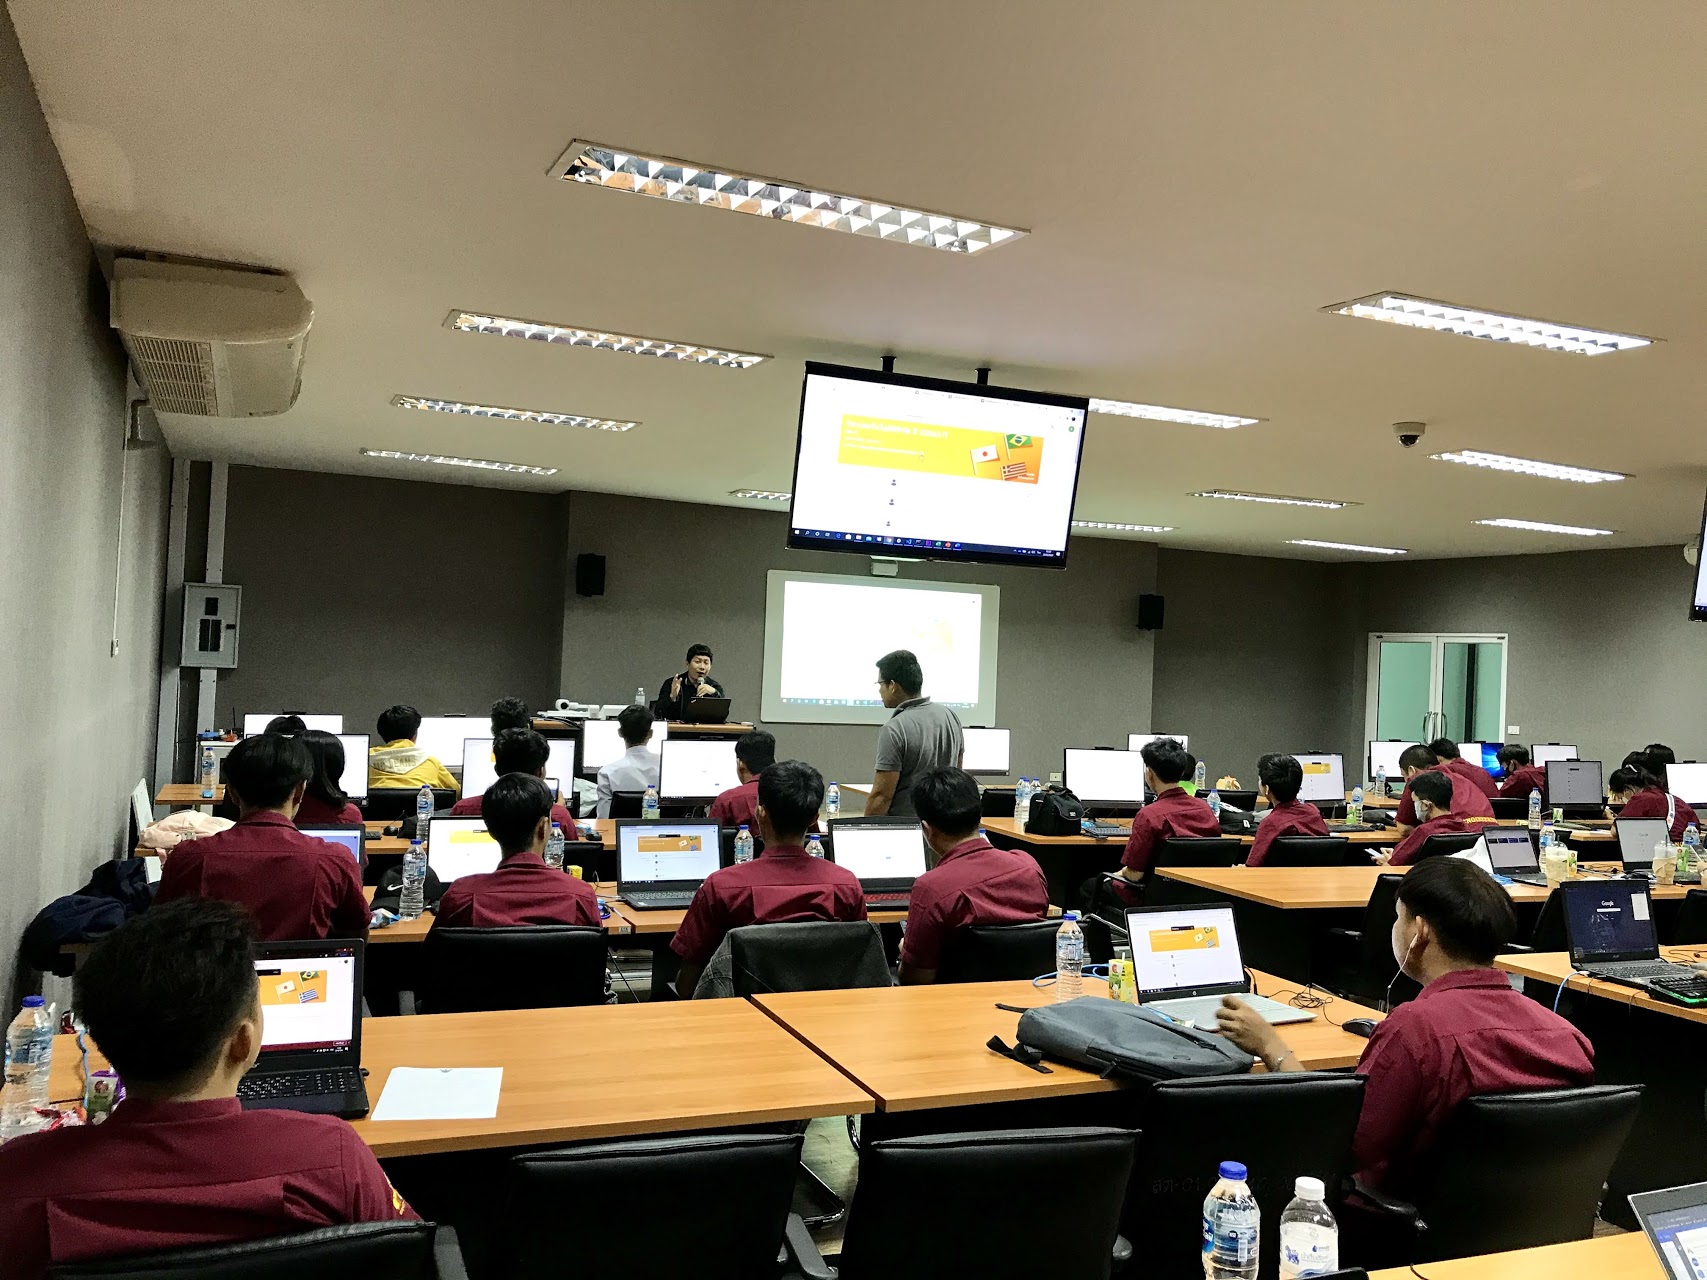 วิทยาลัยธาตุพนม มหาวิทยาลัยนครพนม เข้าศึกษาดูงานพร้อมรับการอบรม เรื่องการจัดการเรียนการสอนออนไลน์ด้วยโปรแกรม Classroom , Meet , Teams